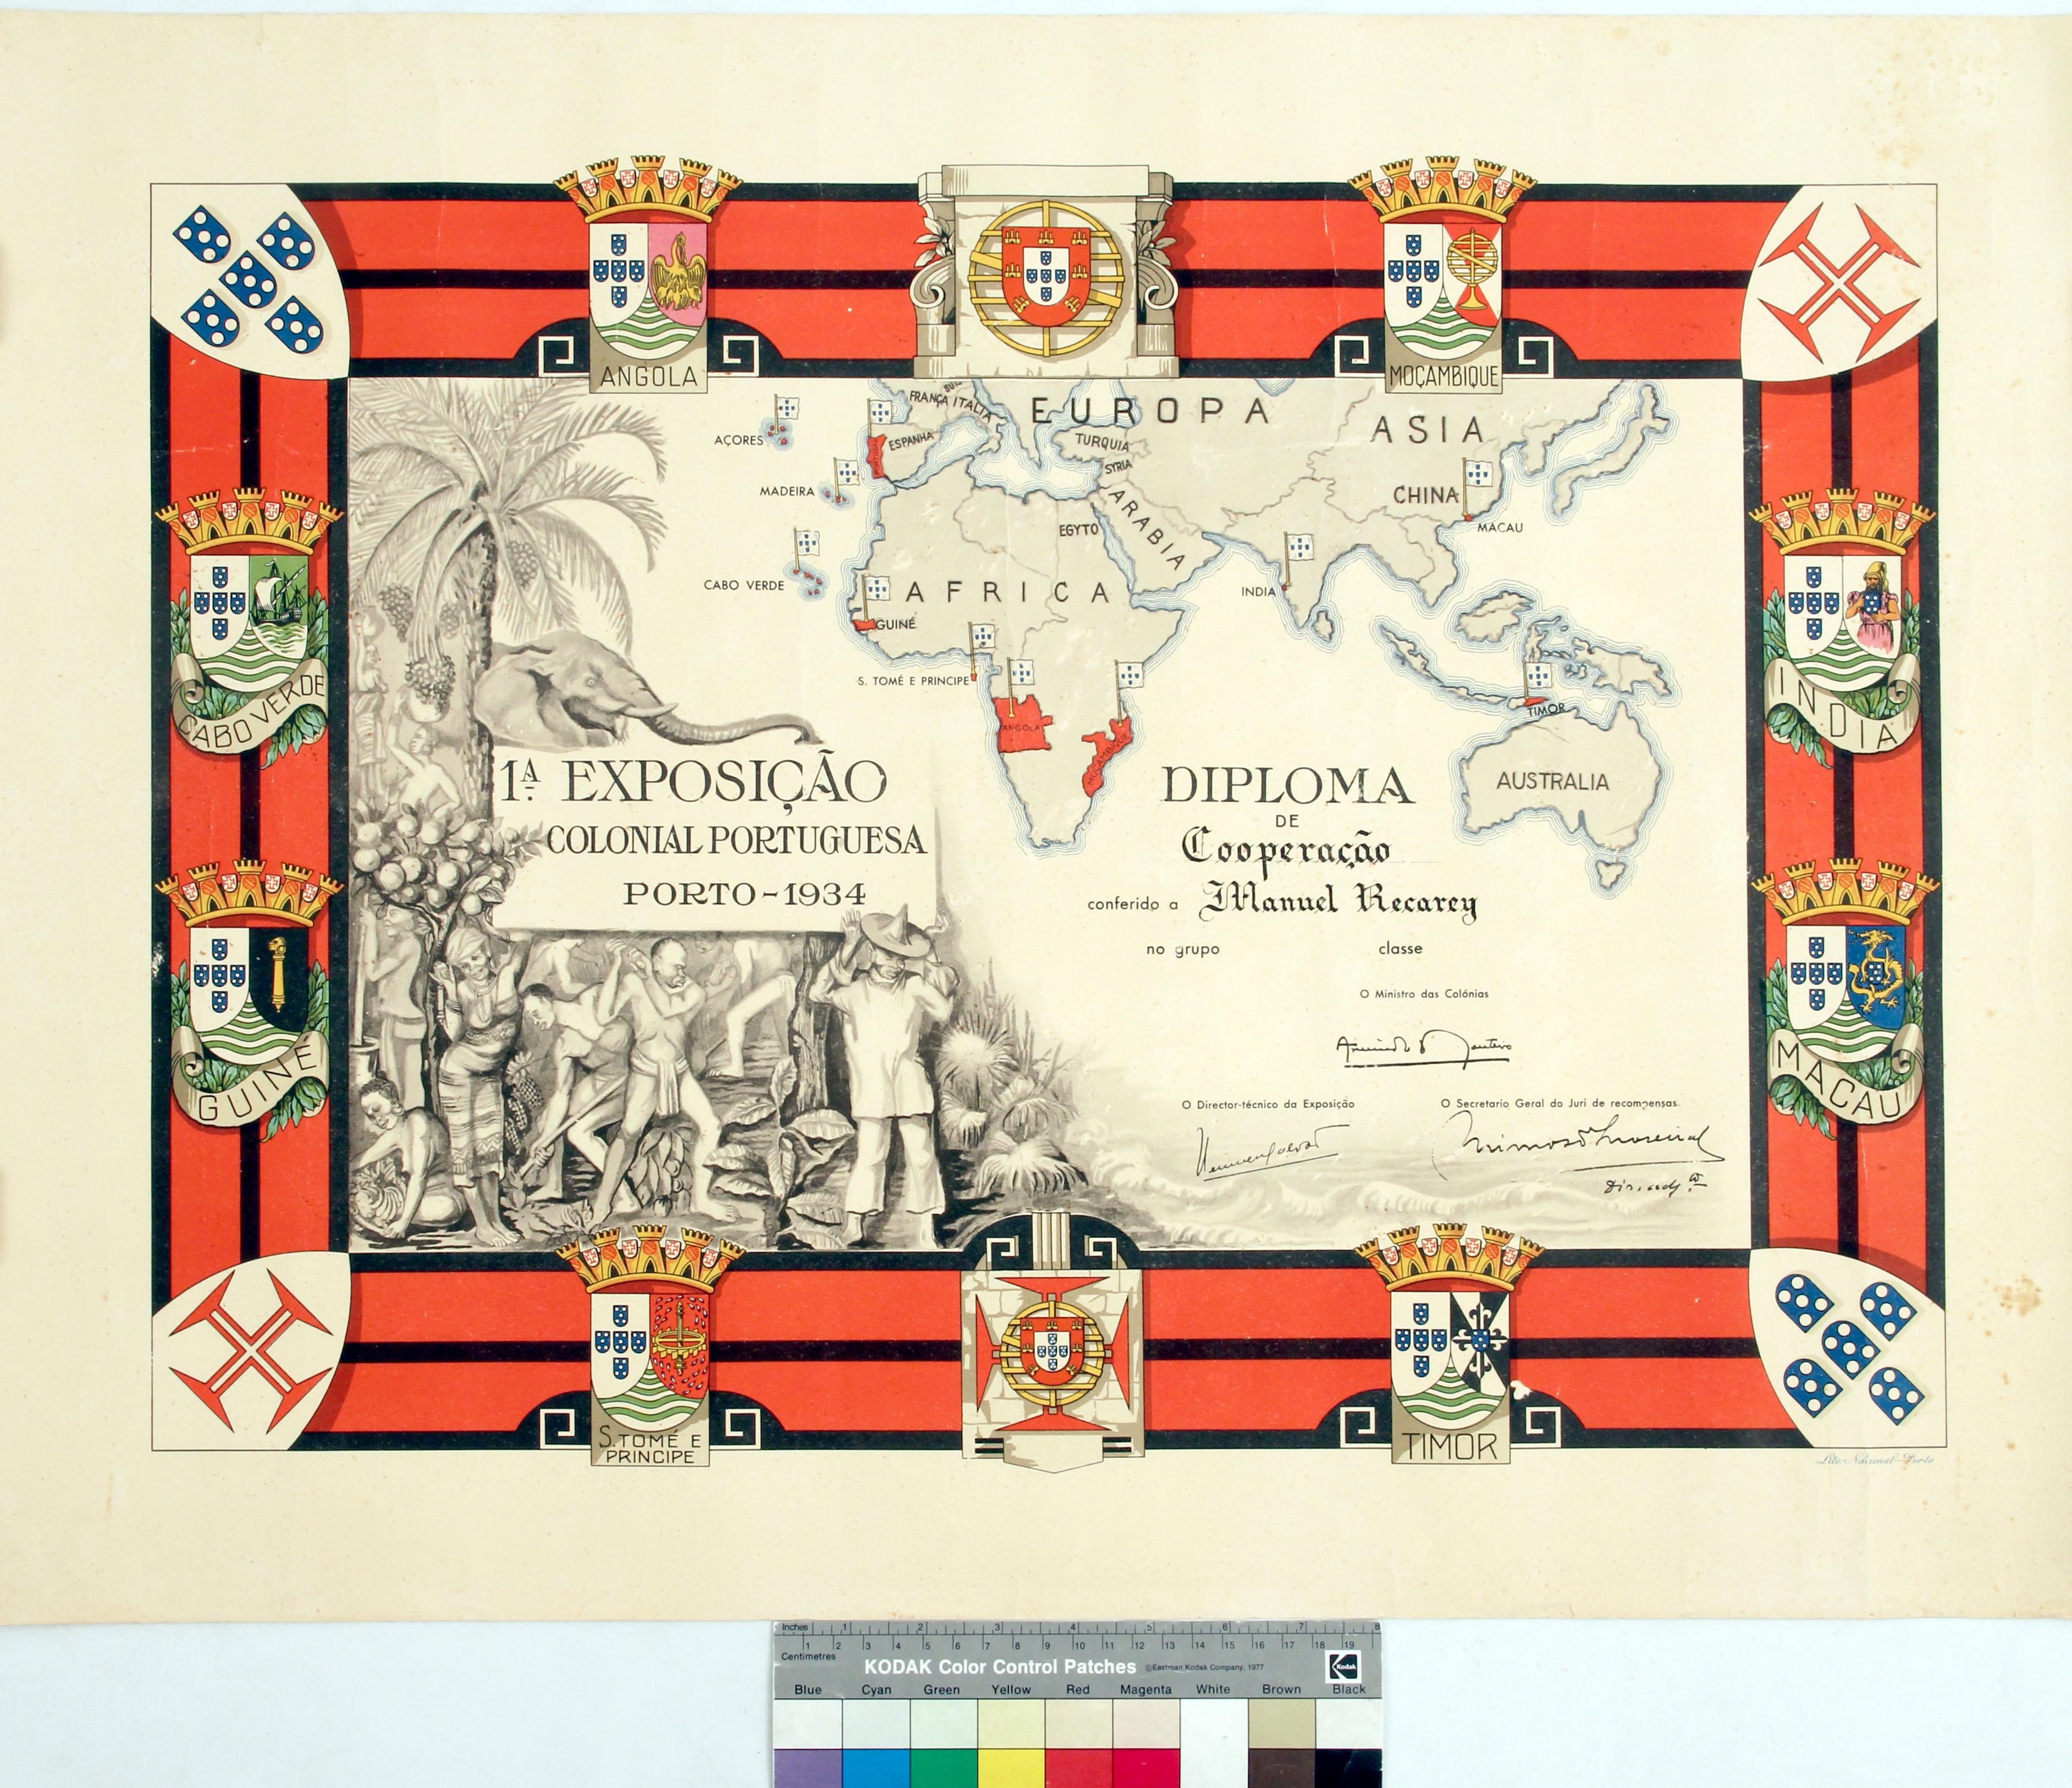 Diploma de cooperação na 1º Exposição Colonial Portuguesa, conferido a Manuel Recarei